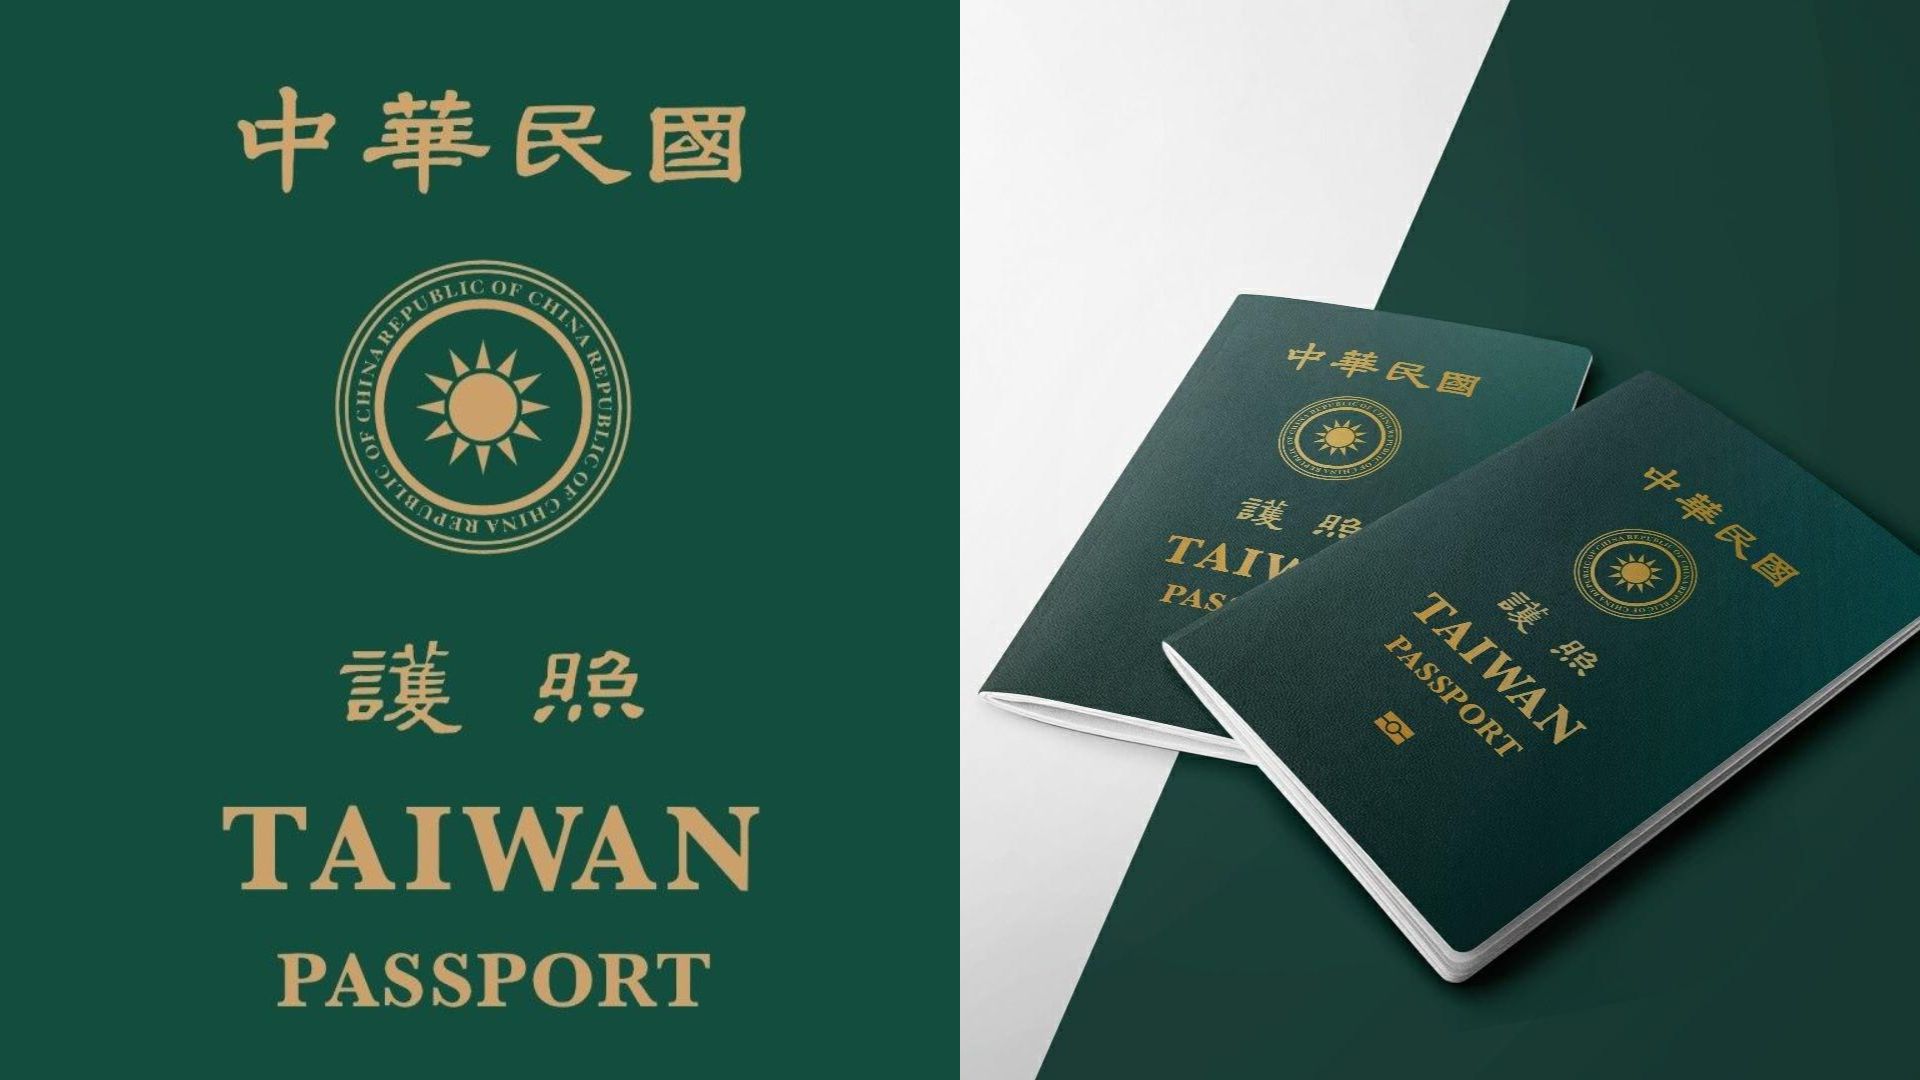 台湾发布新护照封面 凸显台湾元素 主流媒体关注 – 看传媒新闻网